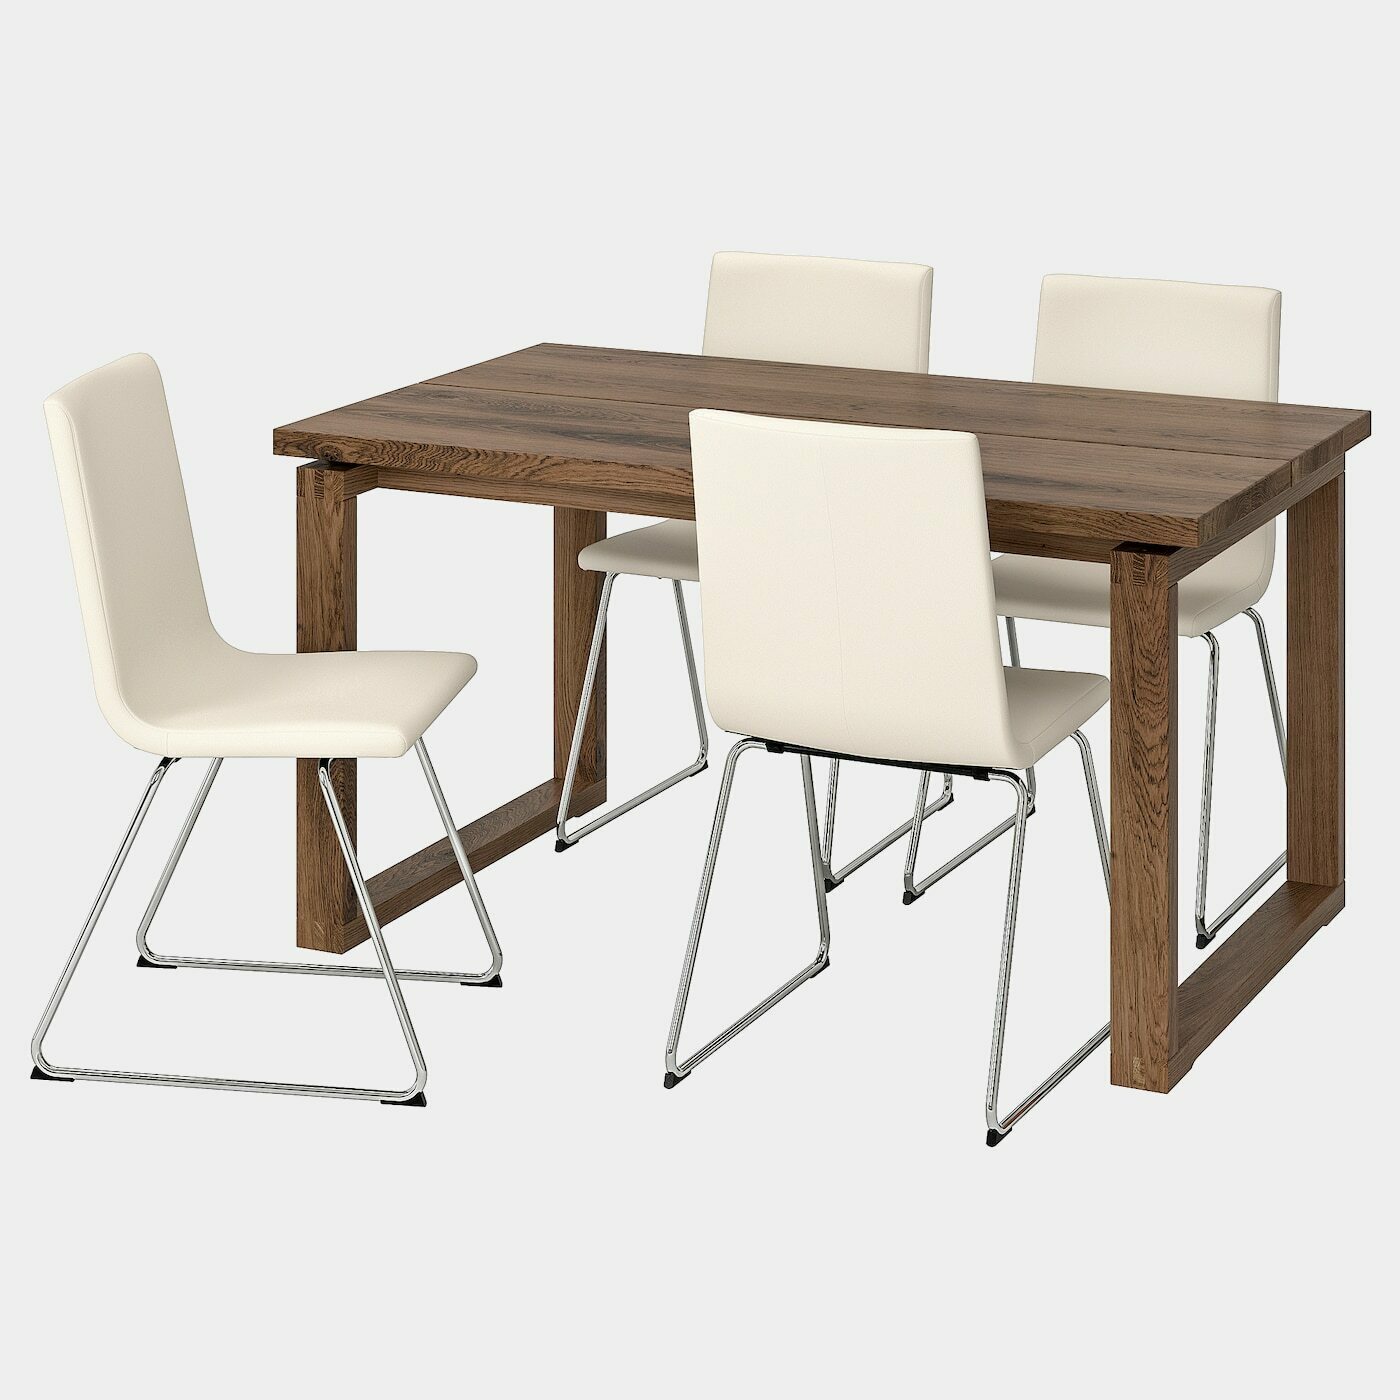 MÖRBYLÅNGA / VOLFGANG Tisch und 4 Stühle  - Essplatzgruppe - Möbel Ideen für dein Zuhause von Home Trends. Möbel Trends von Social Media Influencer für dein Skandi Zuhause.